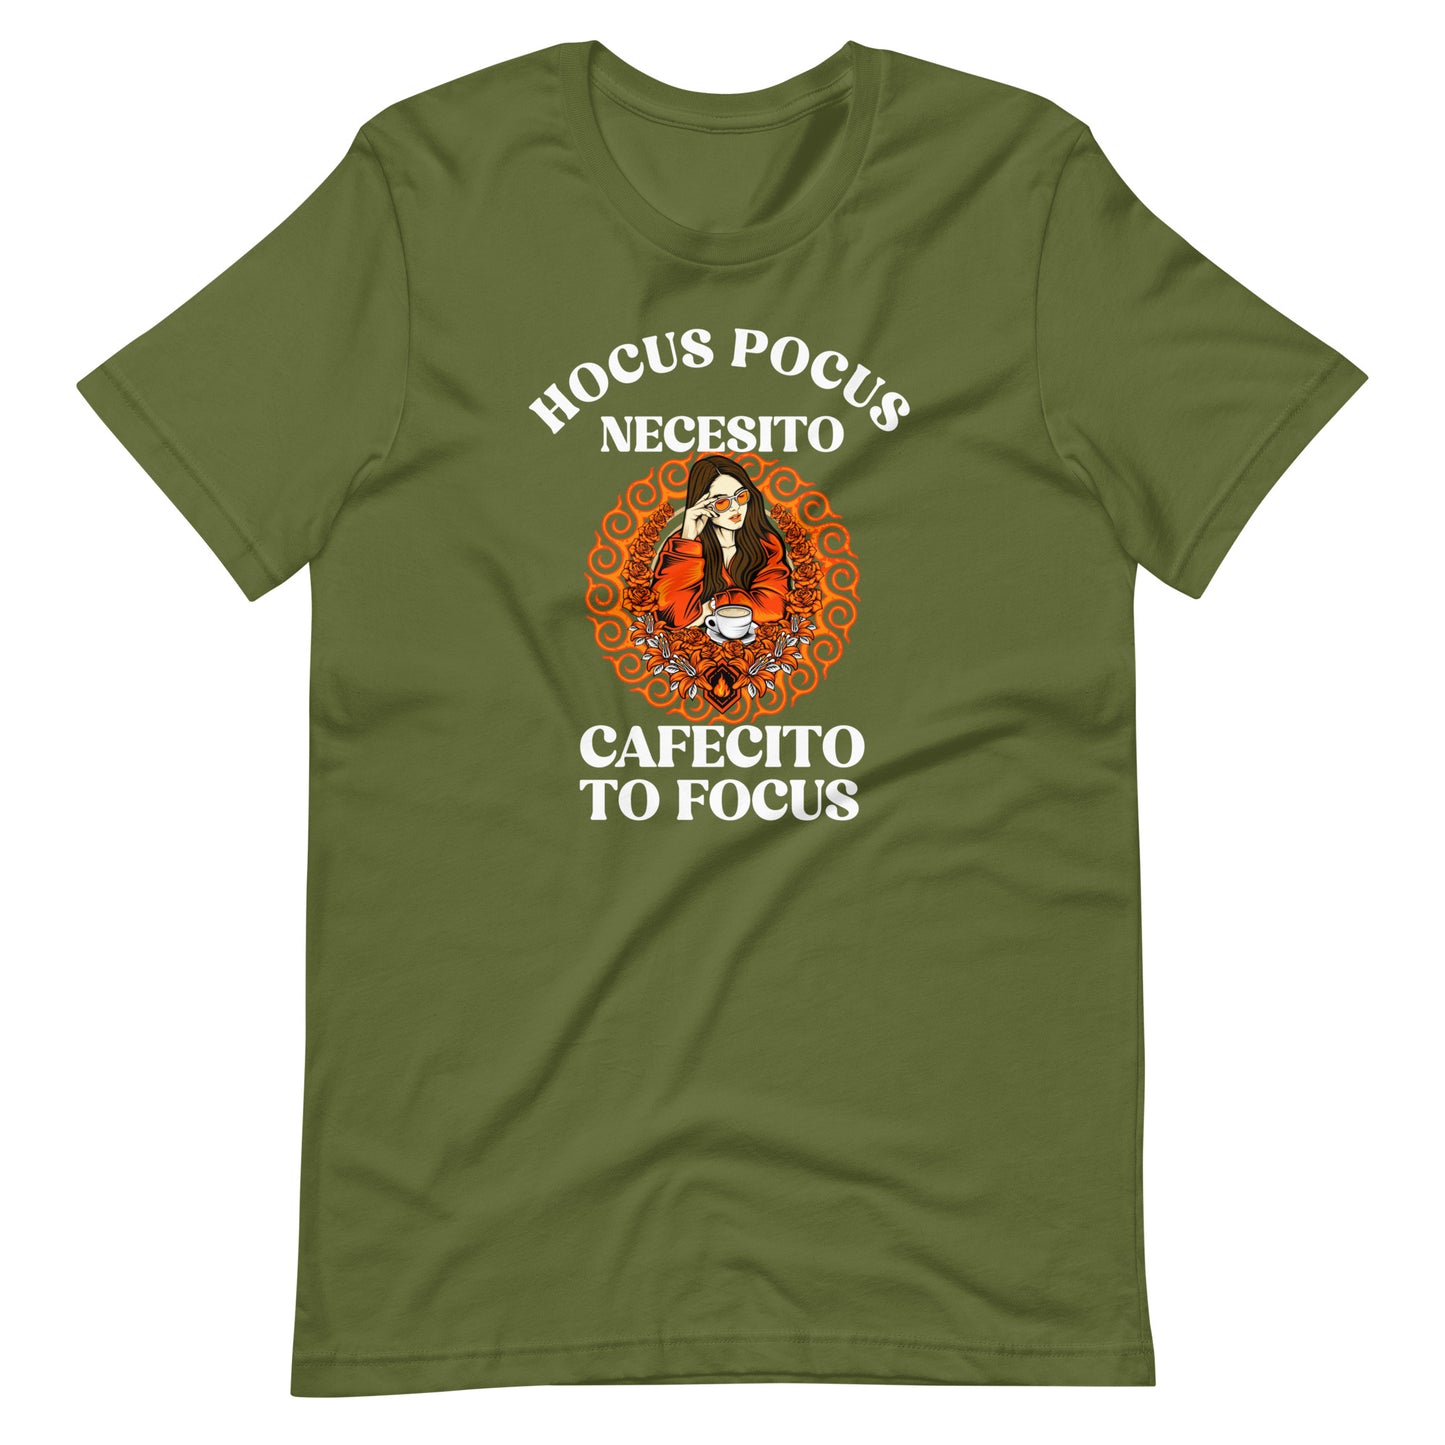 Hocus Pocus Necesito Cafecito to Focus Latina T-Shirt